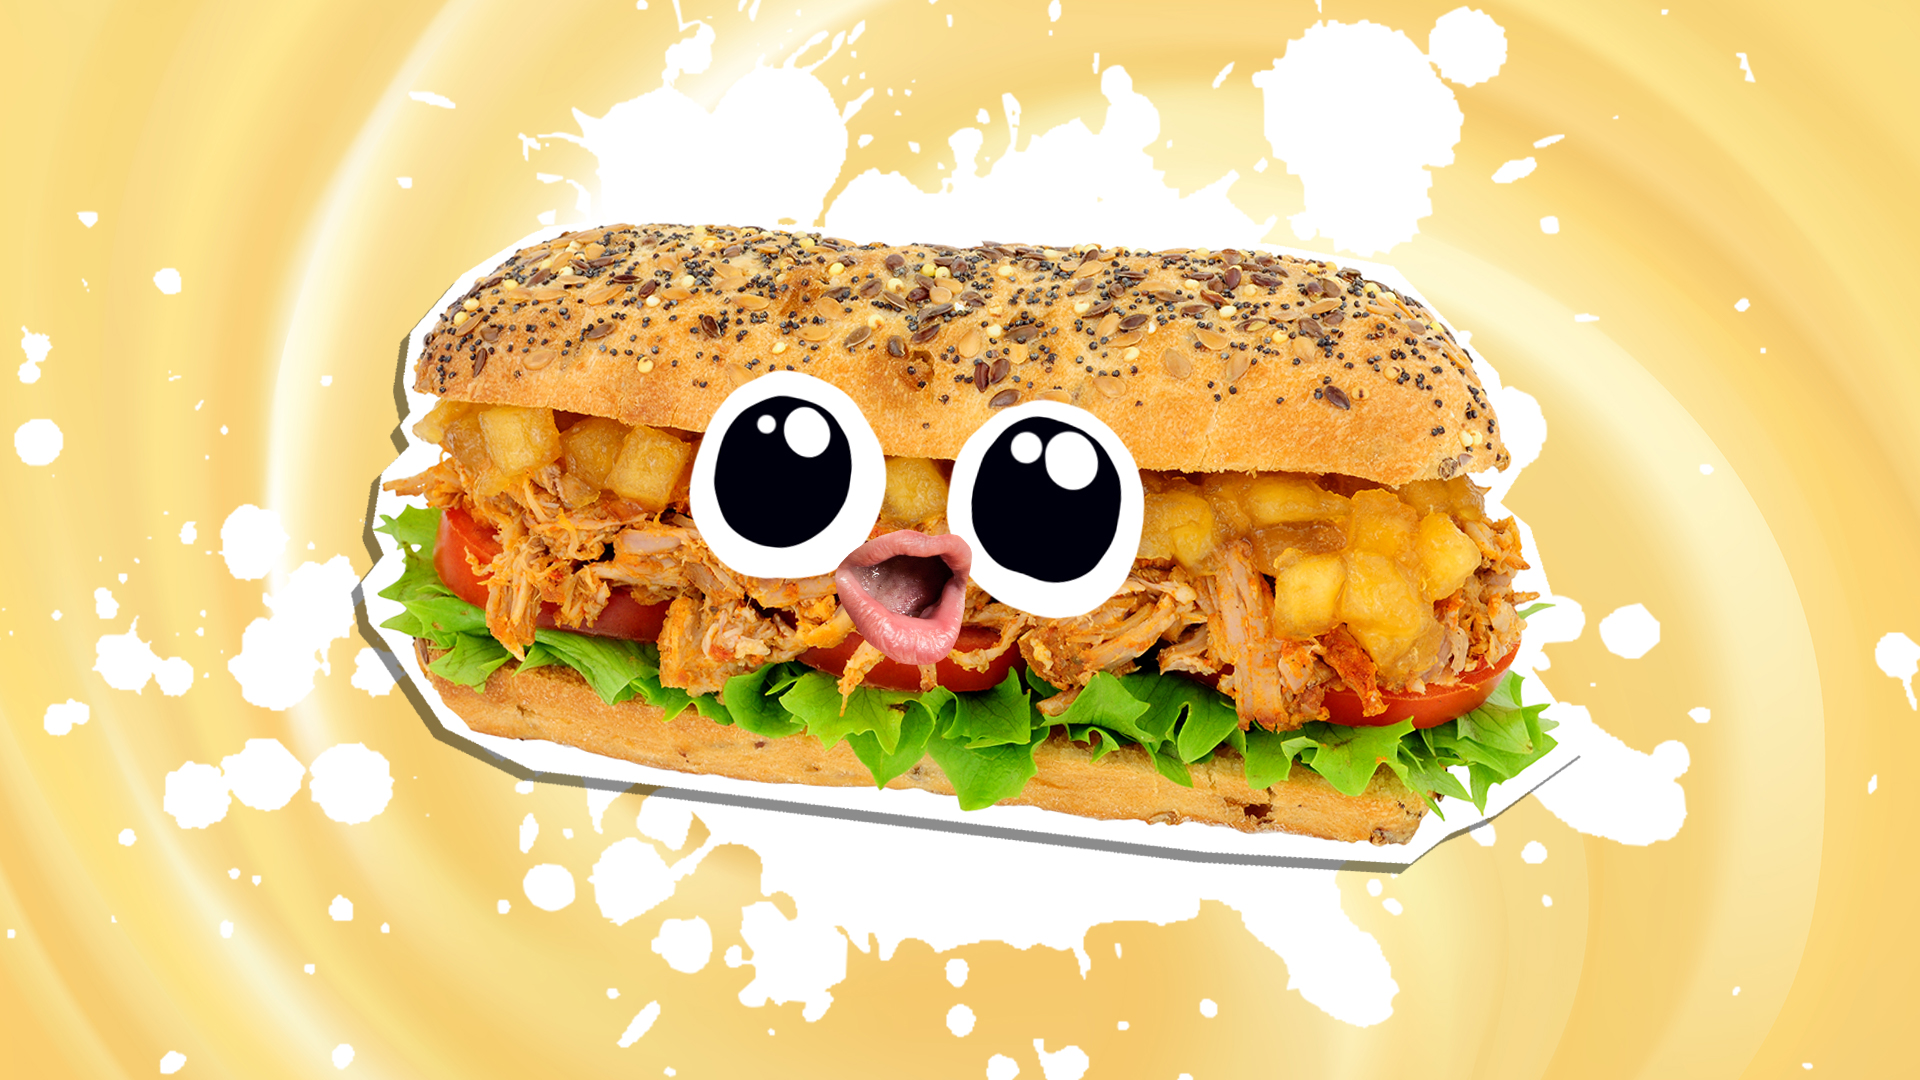 A fancy sub sandwich 